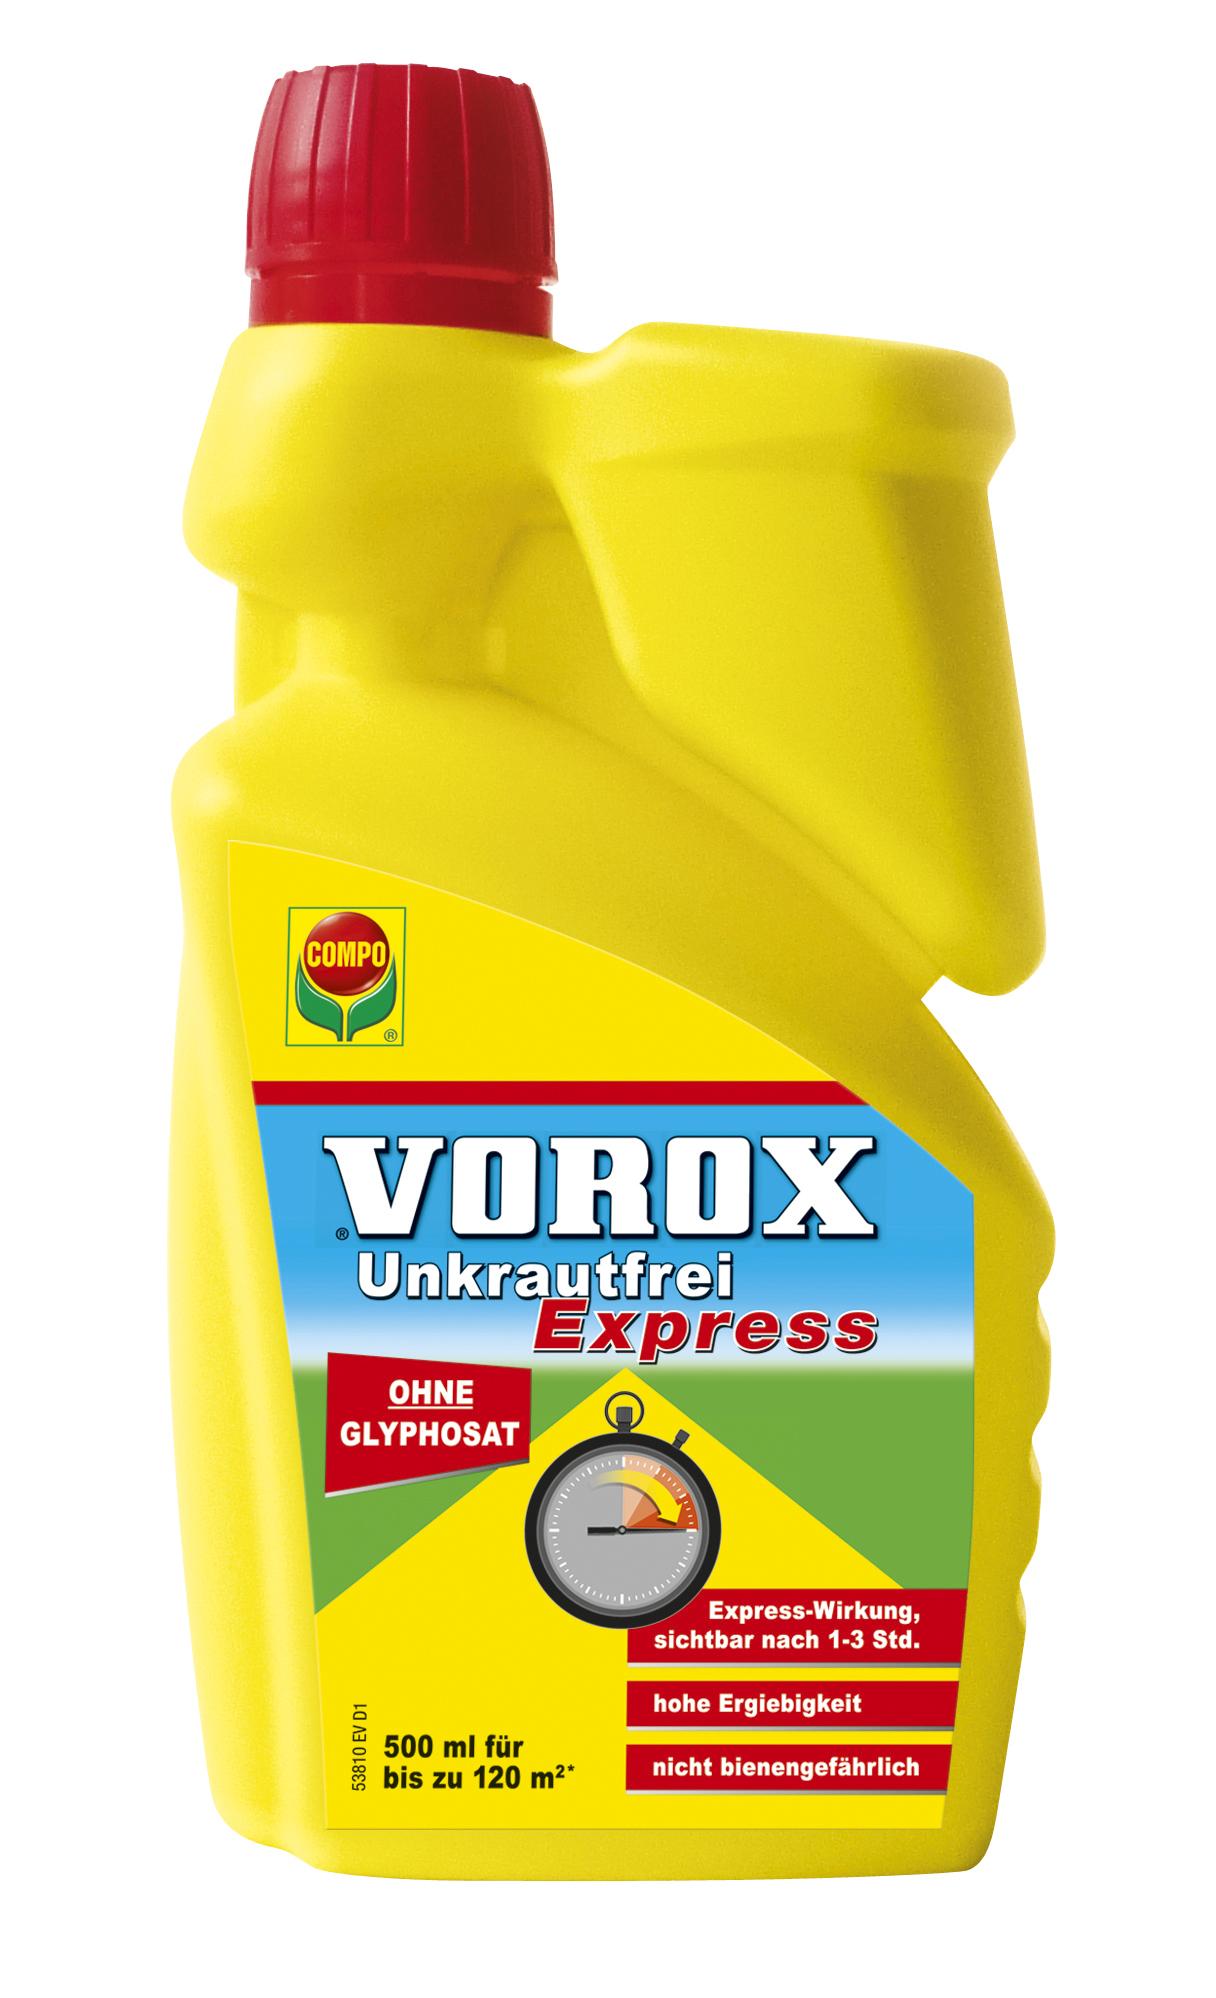 Vorox Unkrautfrei Express - 2,2 L, glyphosatfrei